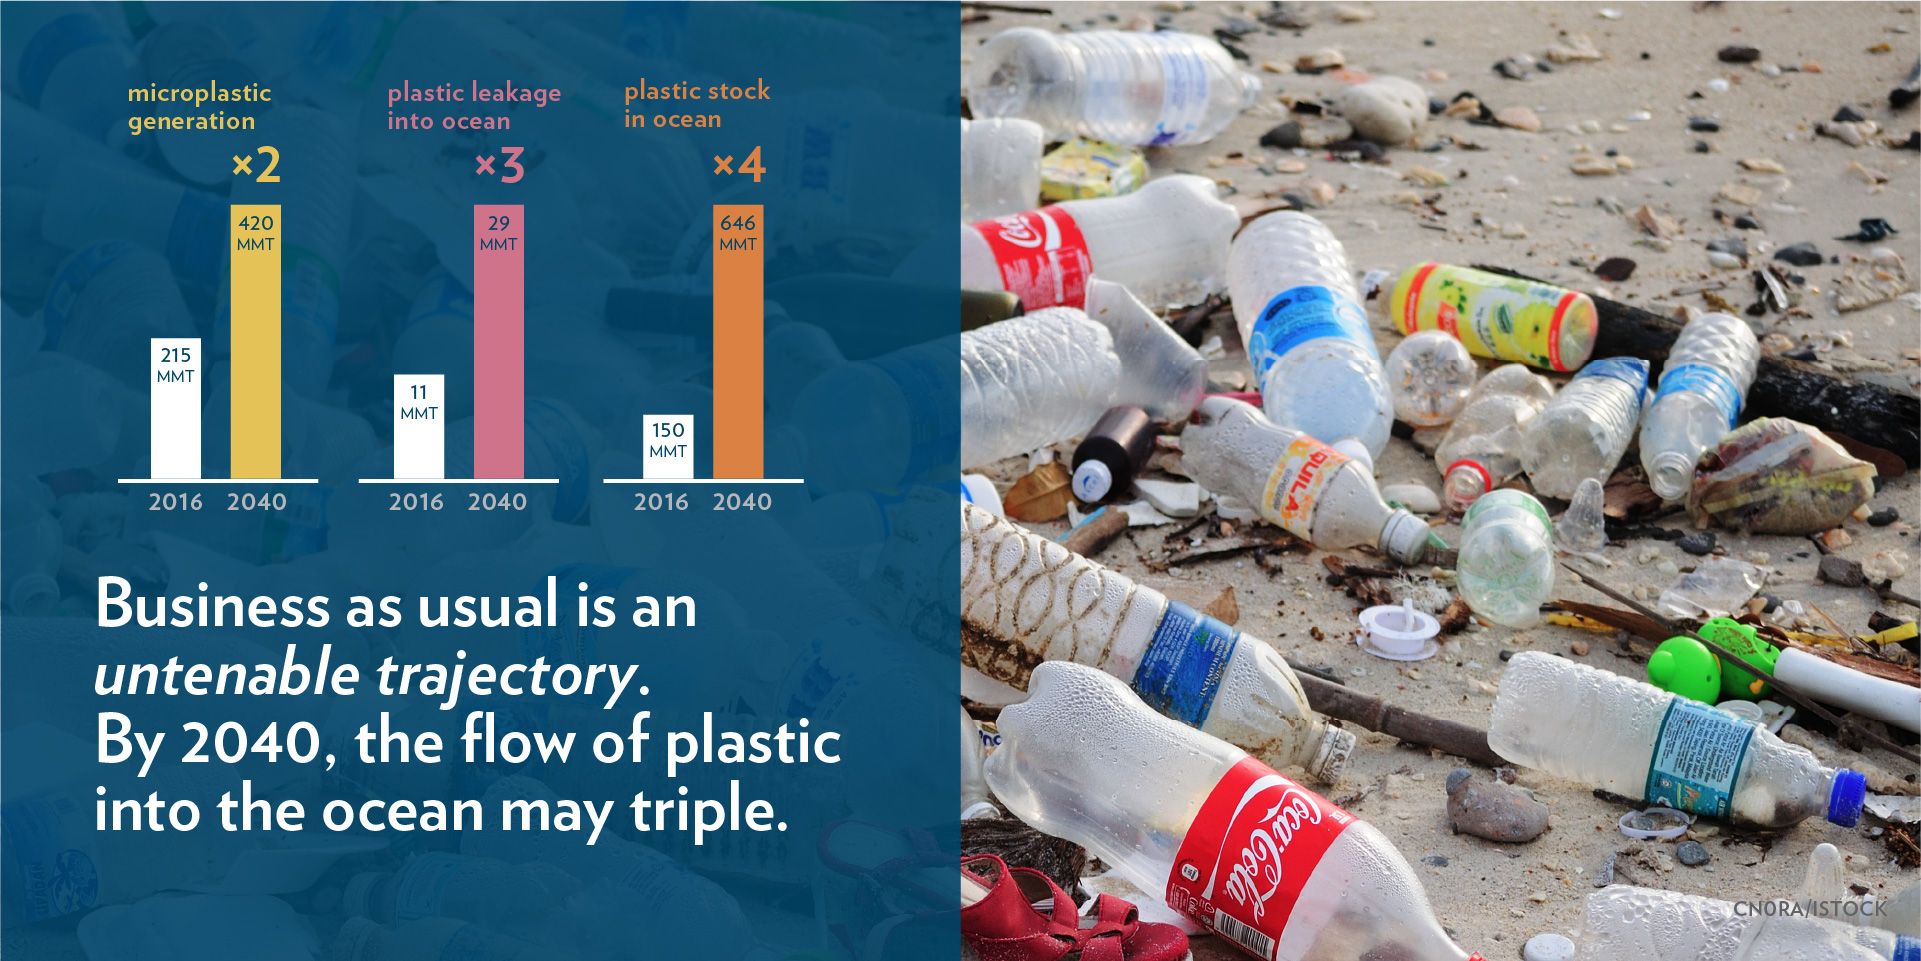 plastic bottles litter beach